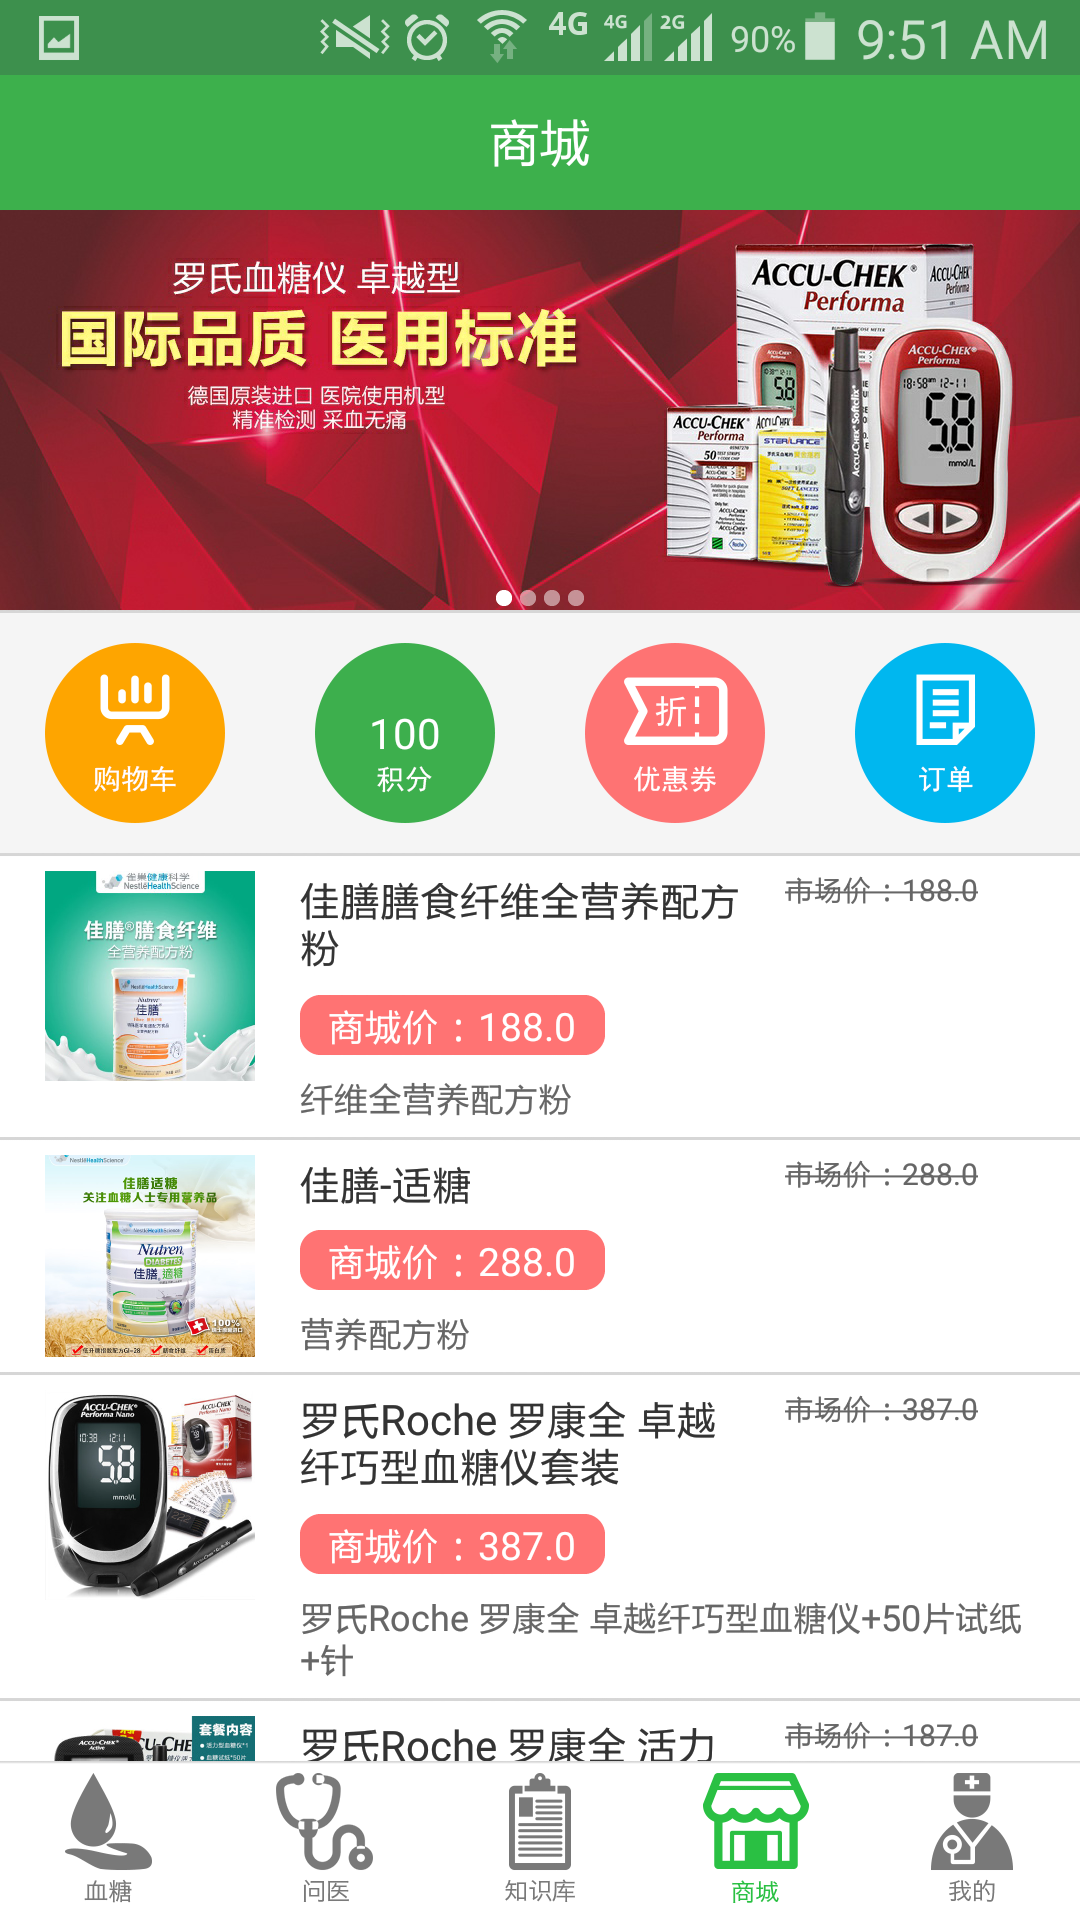 金典糖医app下载,金典糖医app官方下载